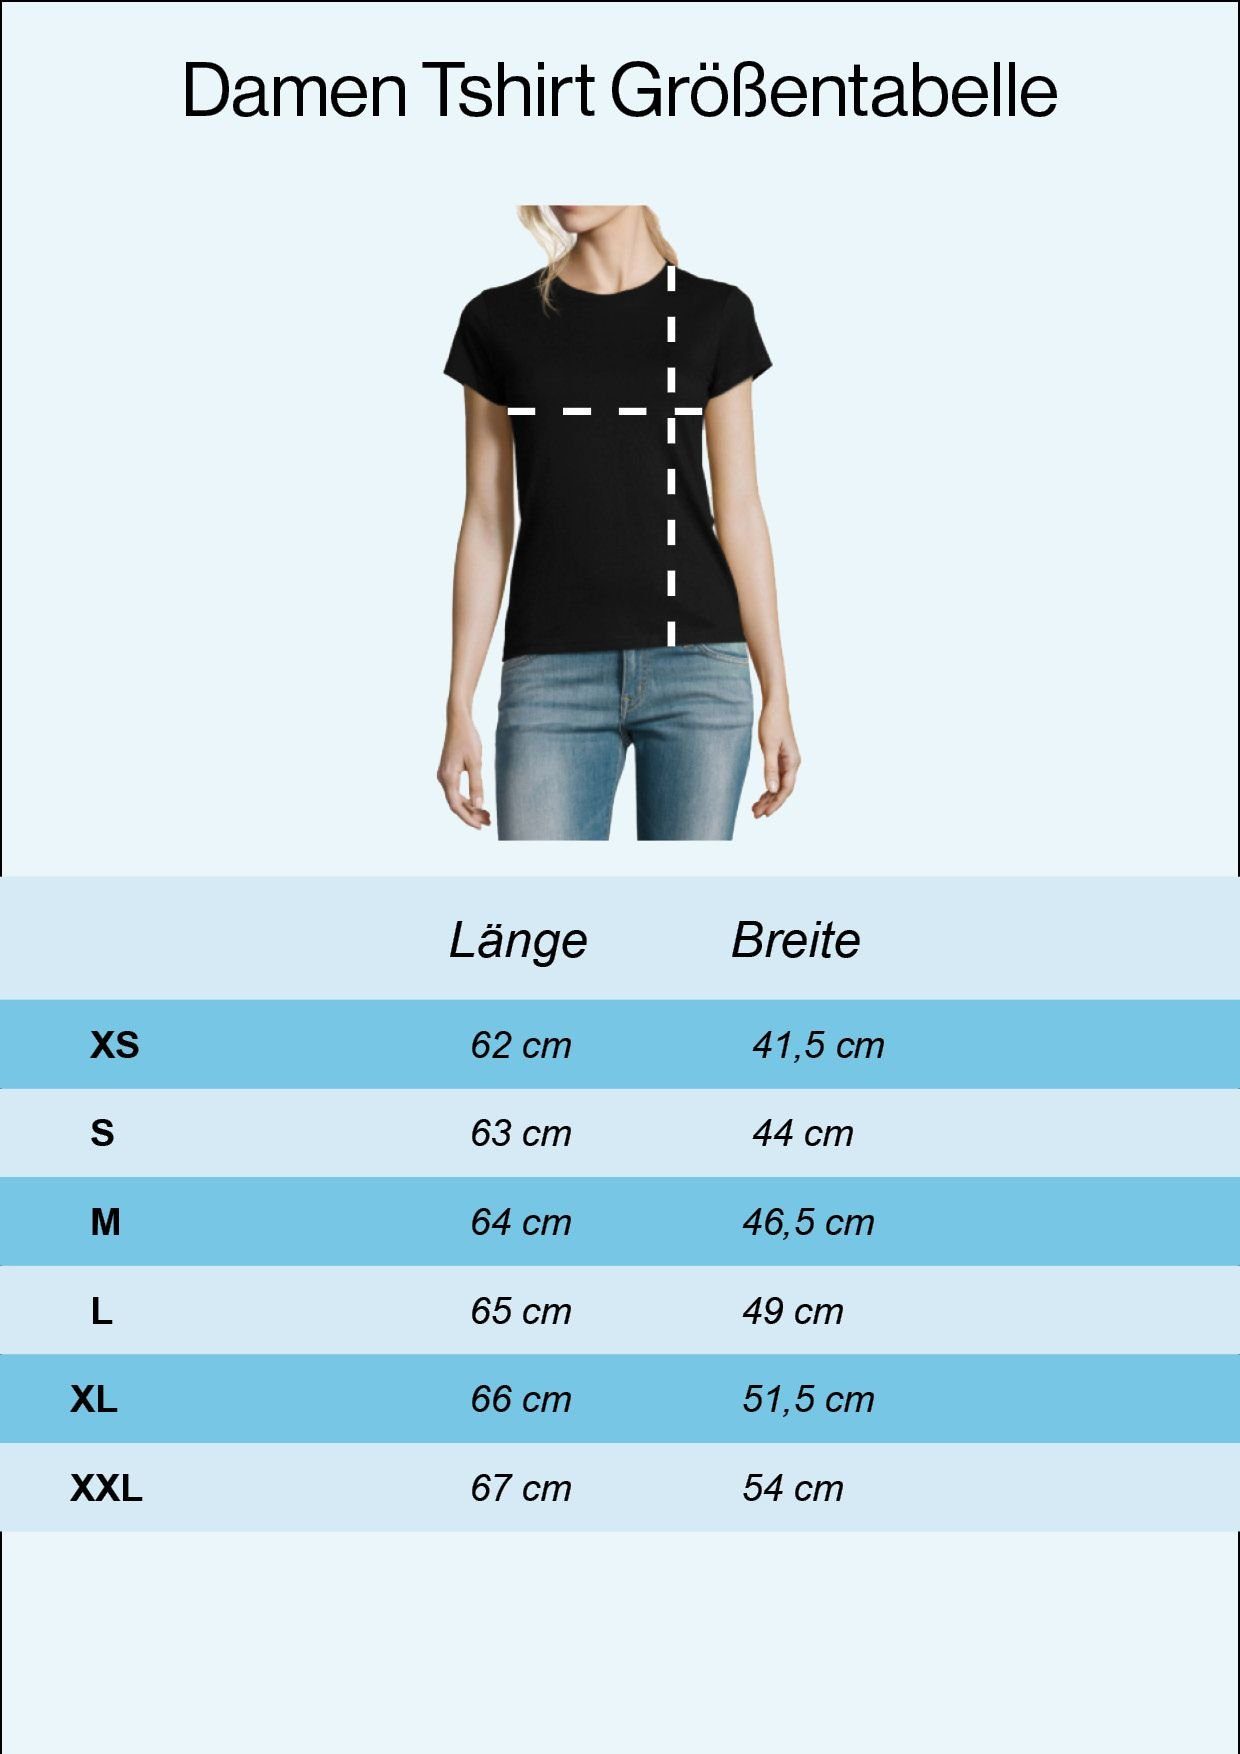 Youth Designz T-Shirt Nicht Aufgeben Damen T-Shirt mit Wandern Grau trendigem Frontprint